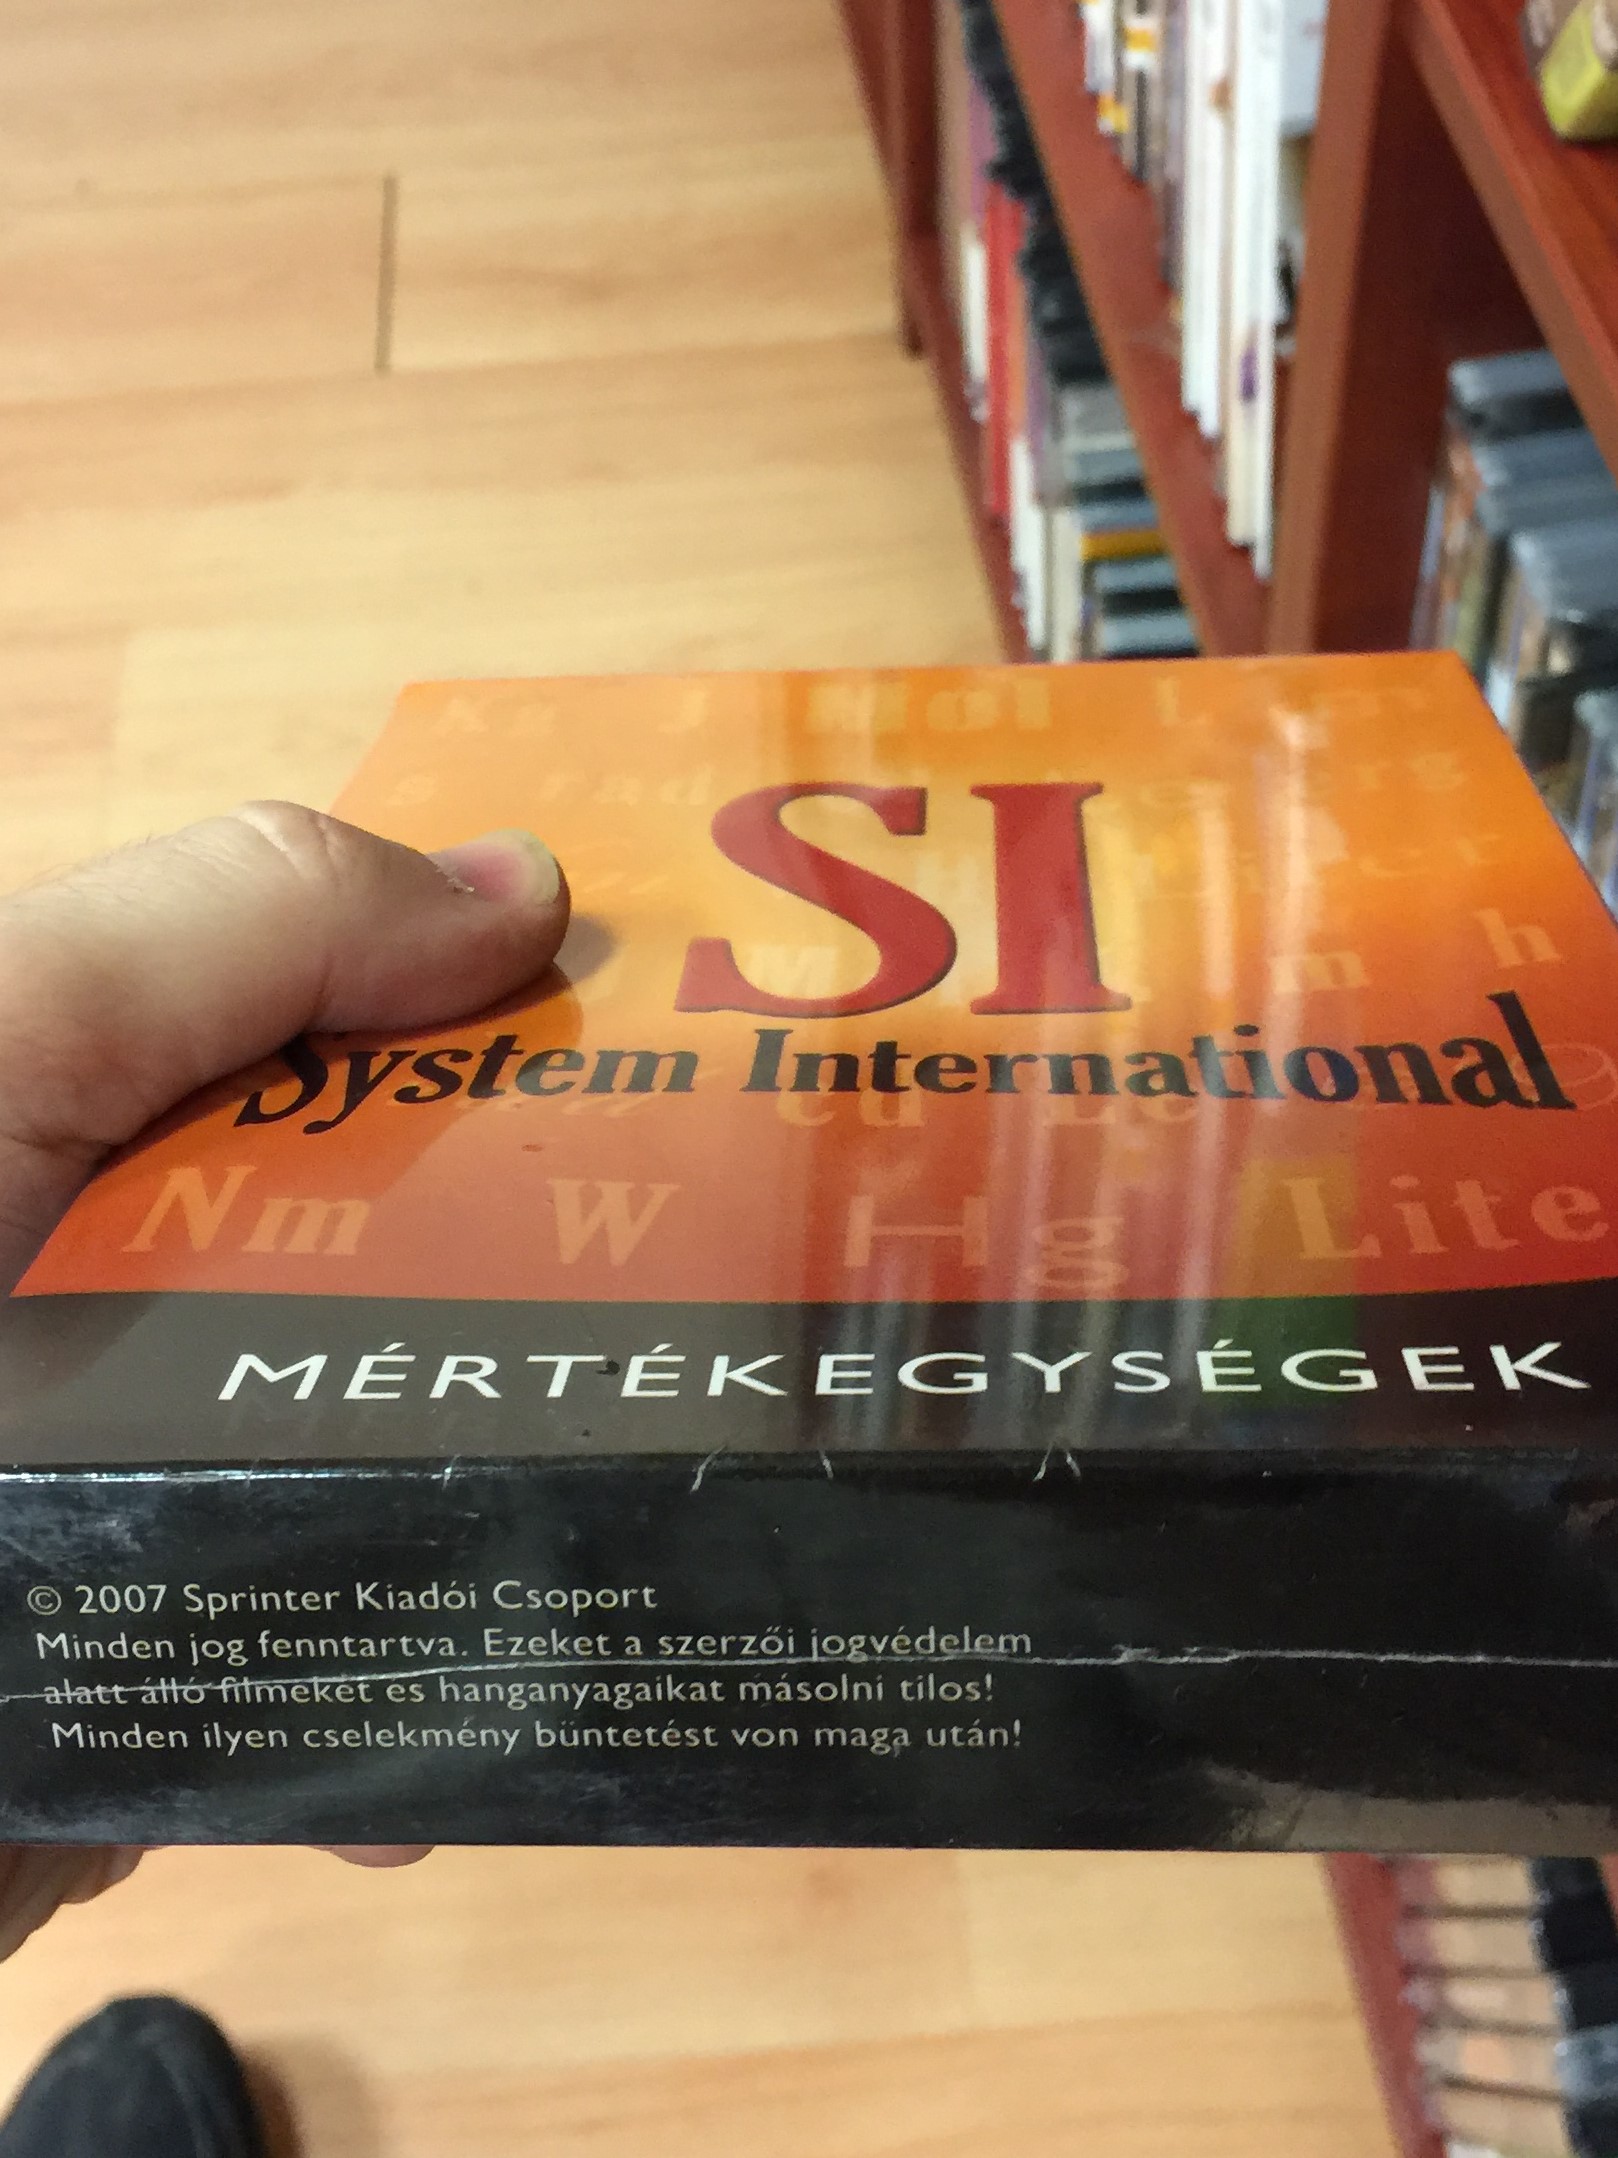 SI - System International DVD 2007 Mértékegységek 3.JPG